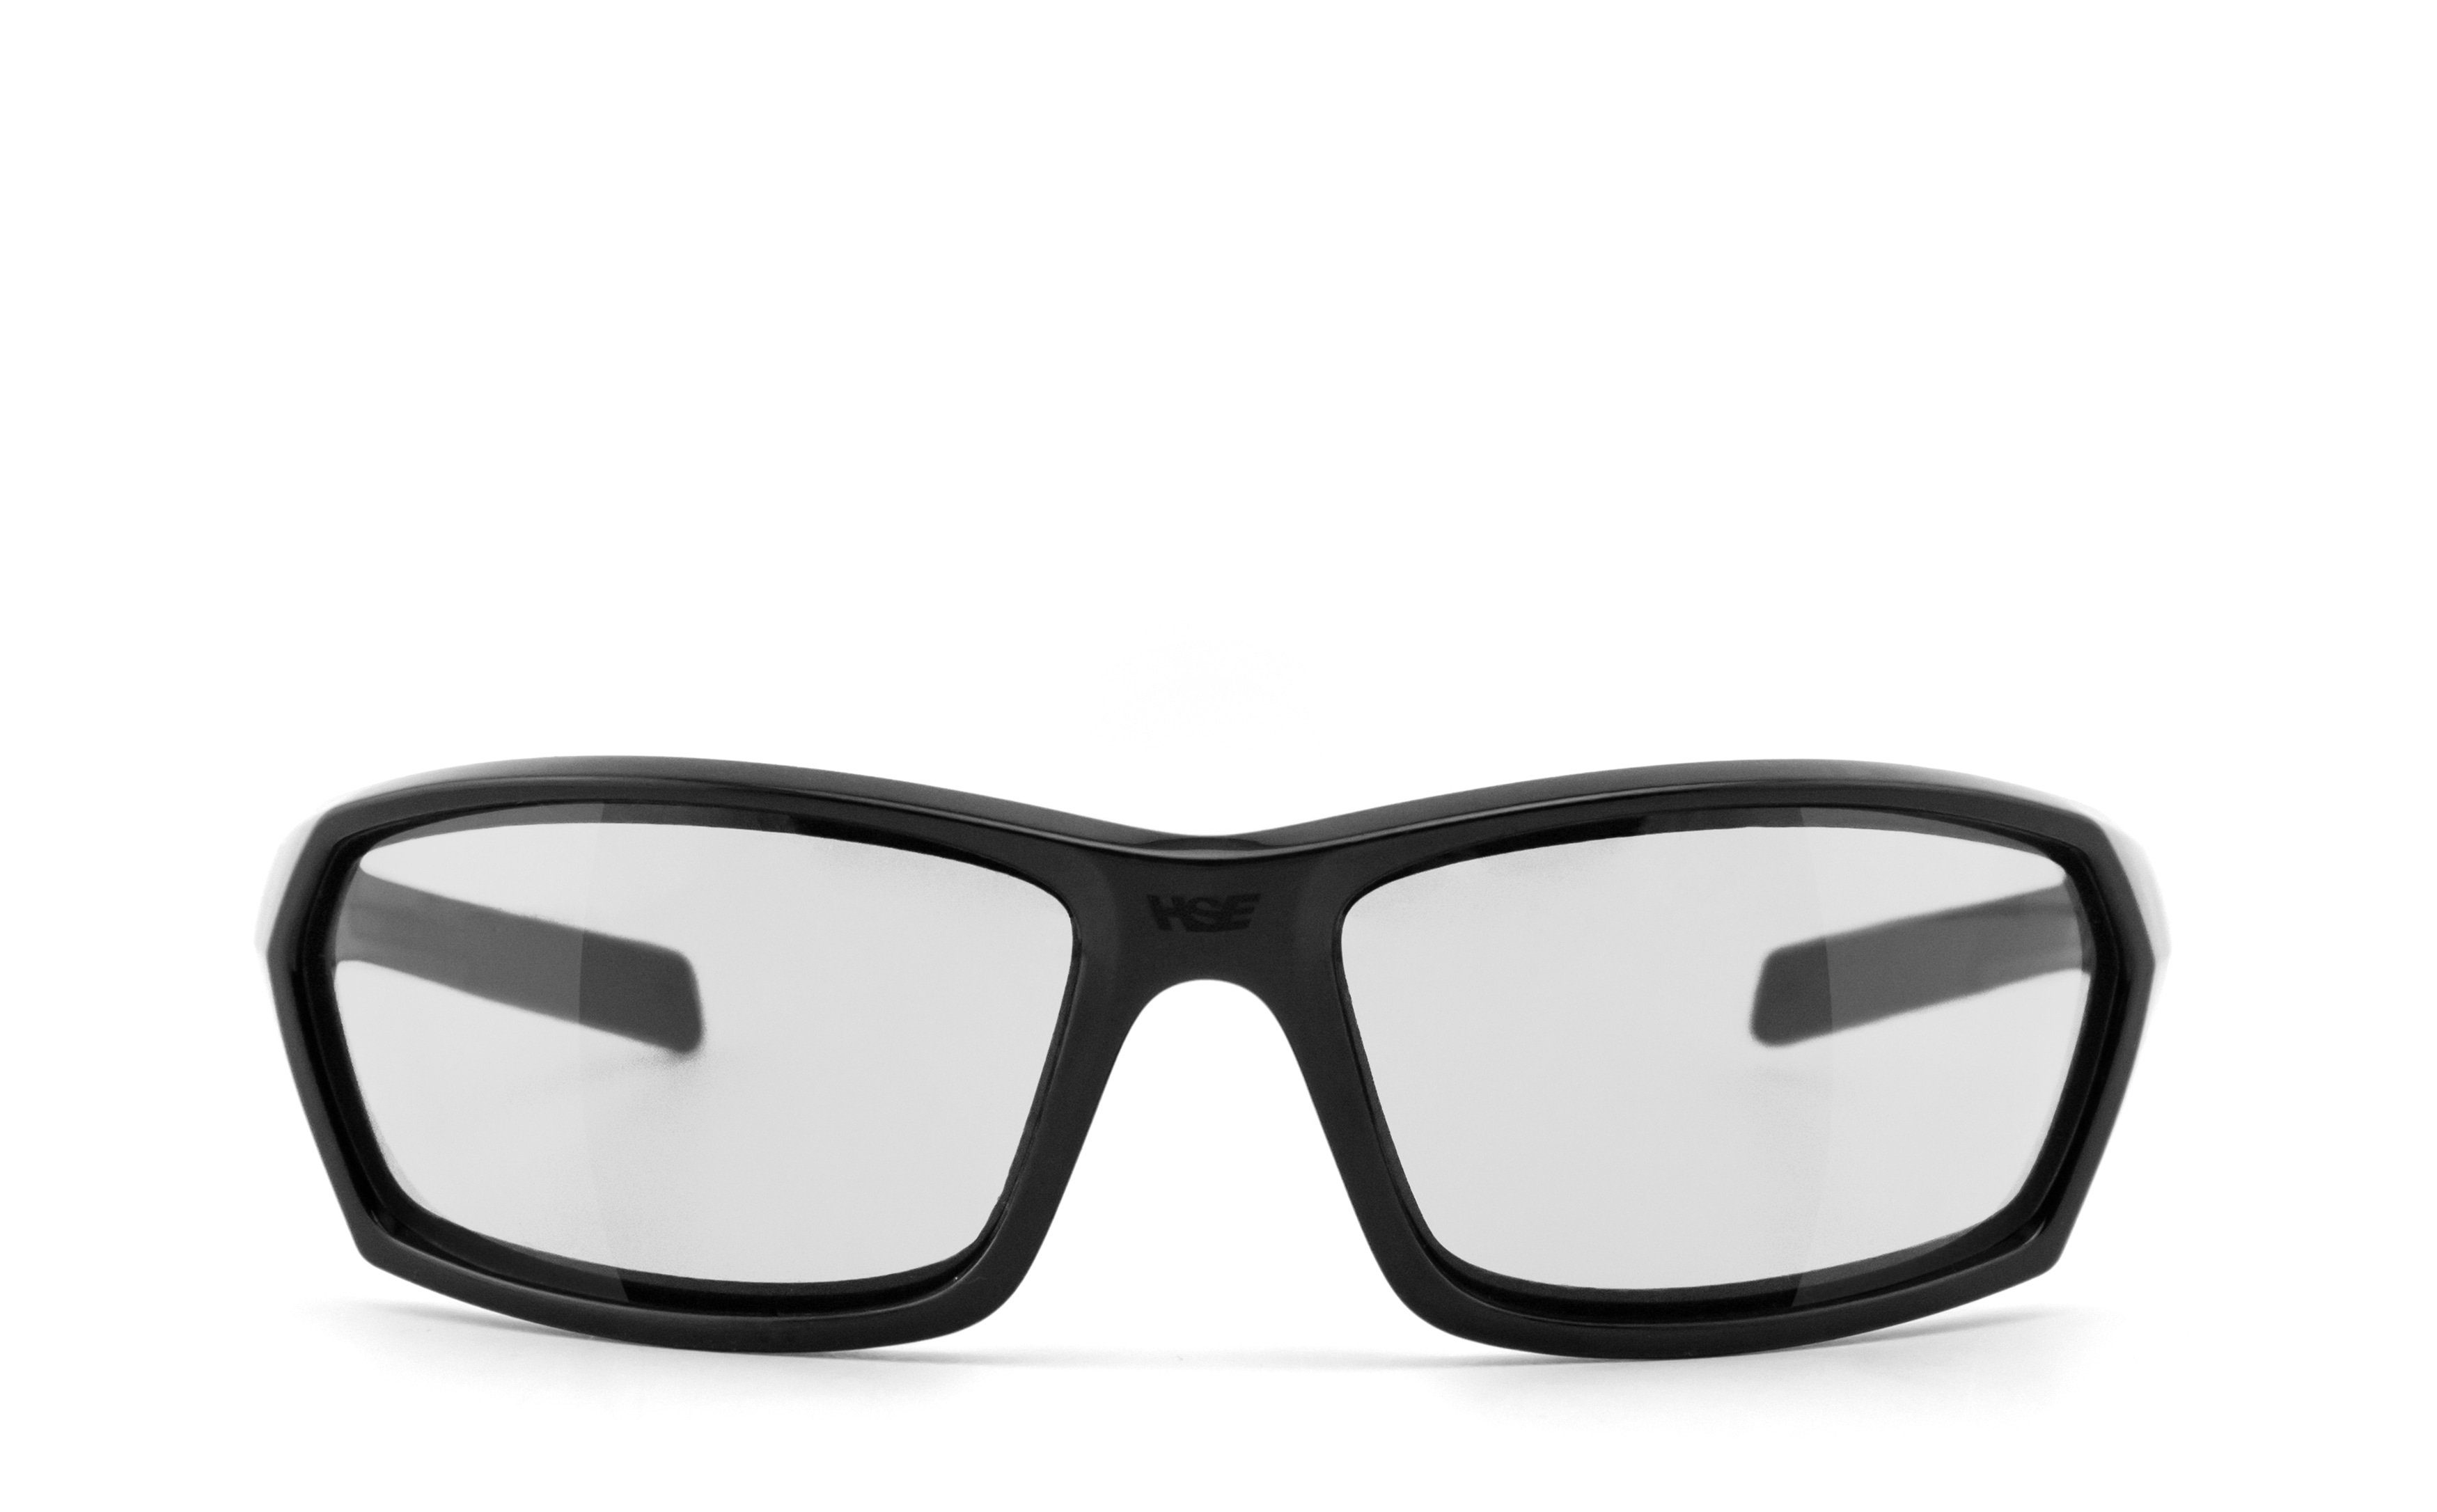 Sportbrille - Gläser HSE SportEyes selbsttönend, AIR-STREAM - Selbsttönende